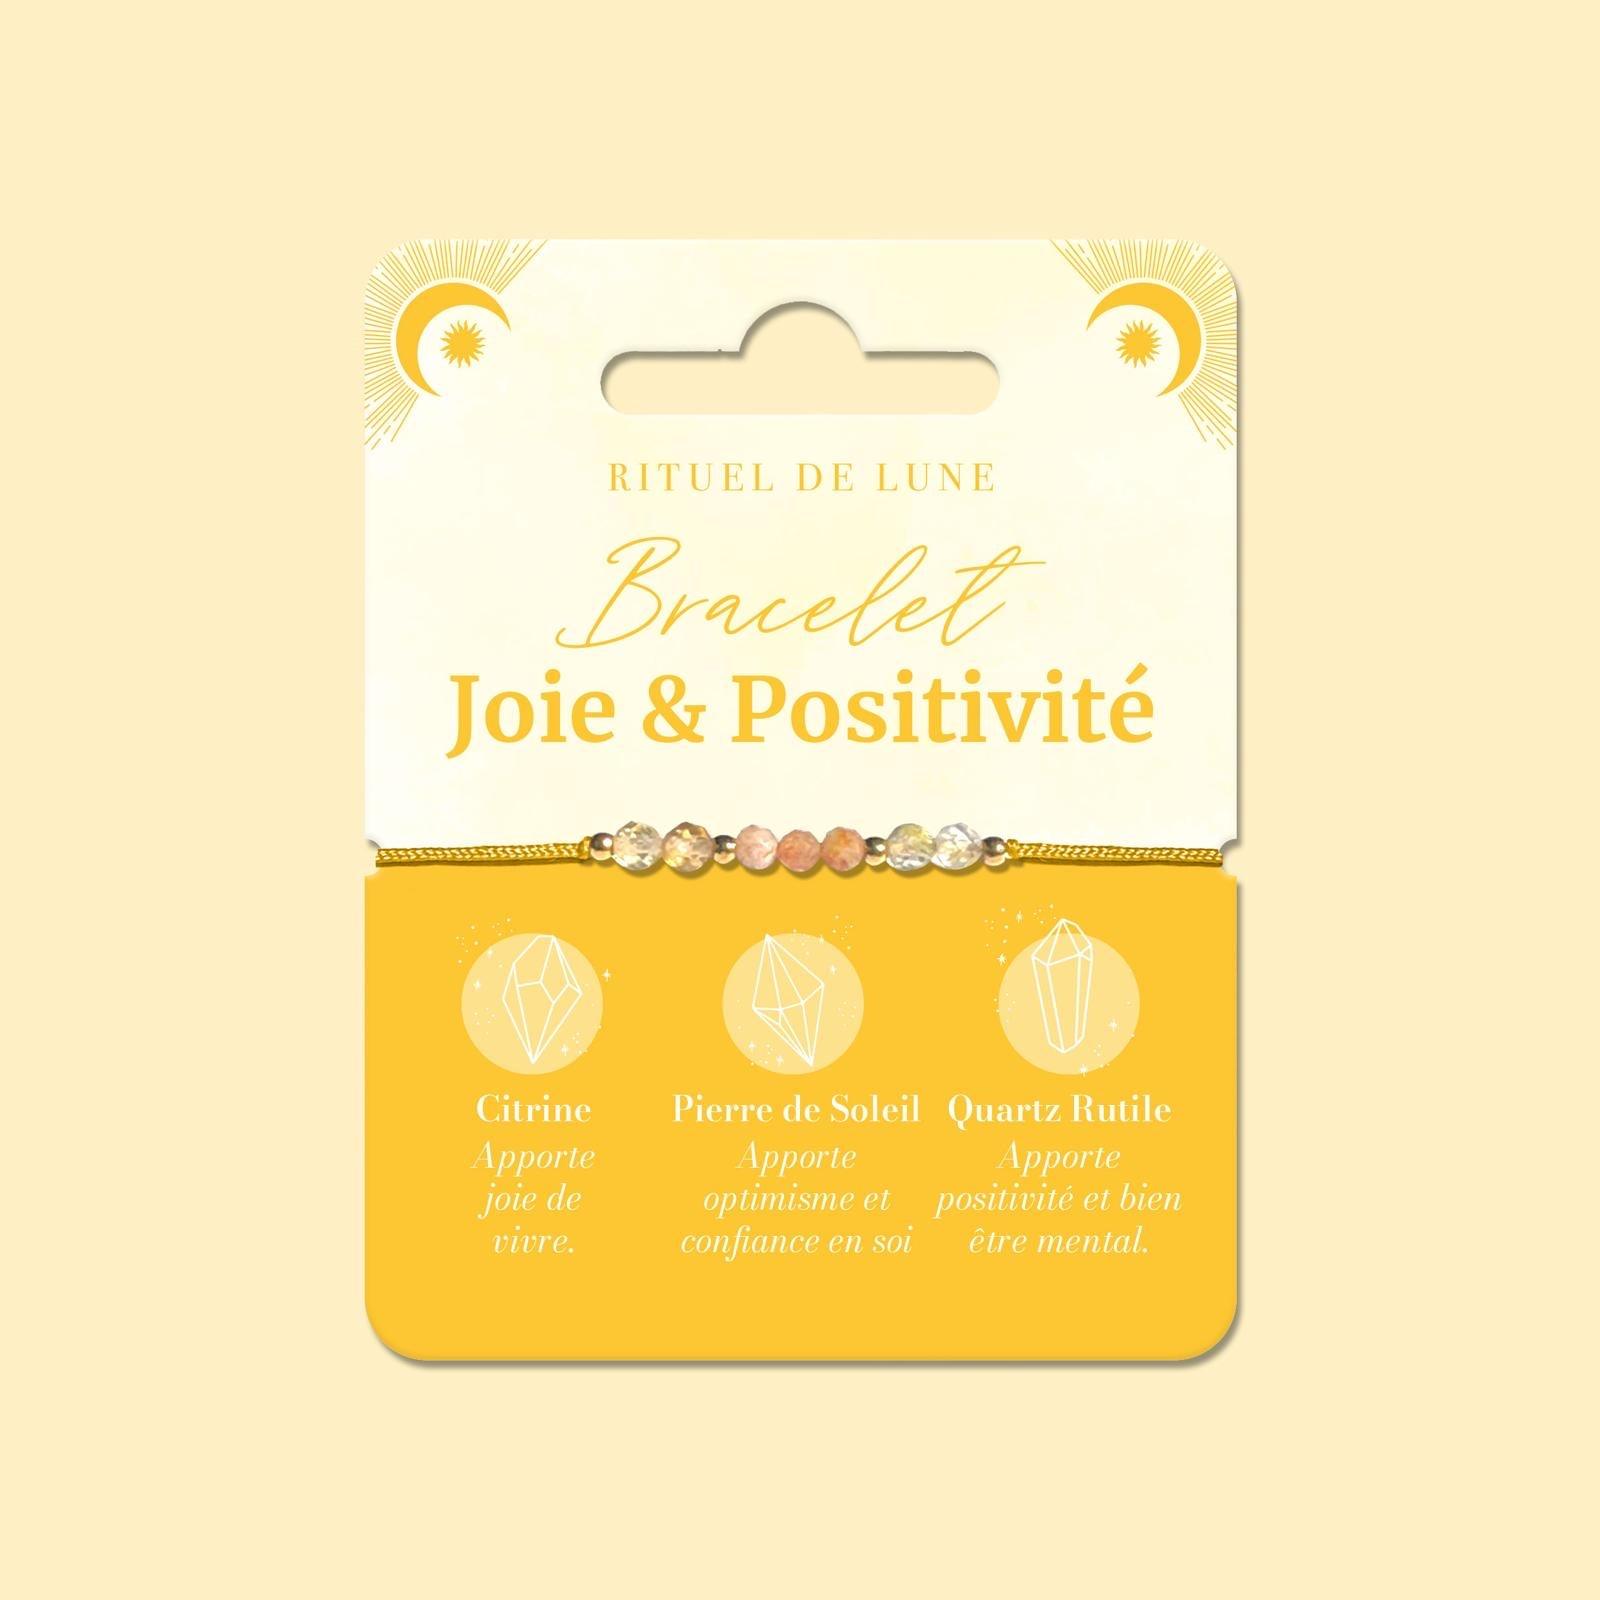 Bracelet Joie et positivité • Rituel de Lune